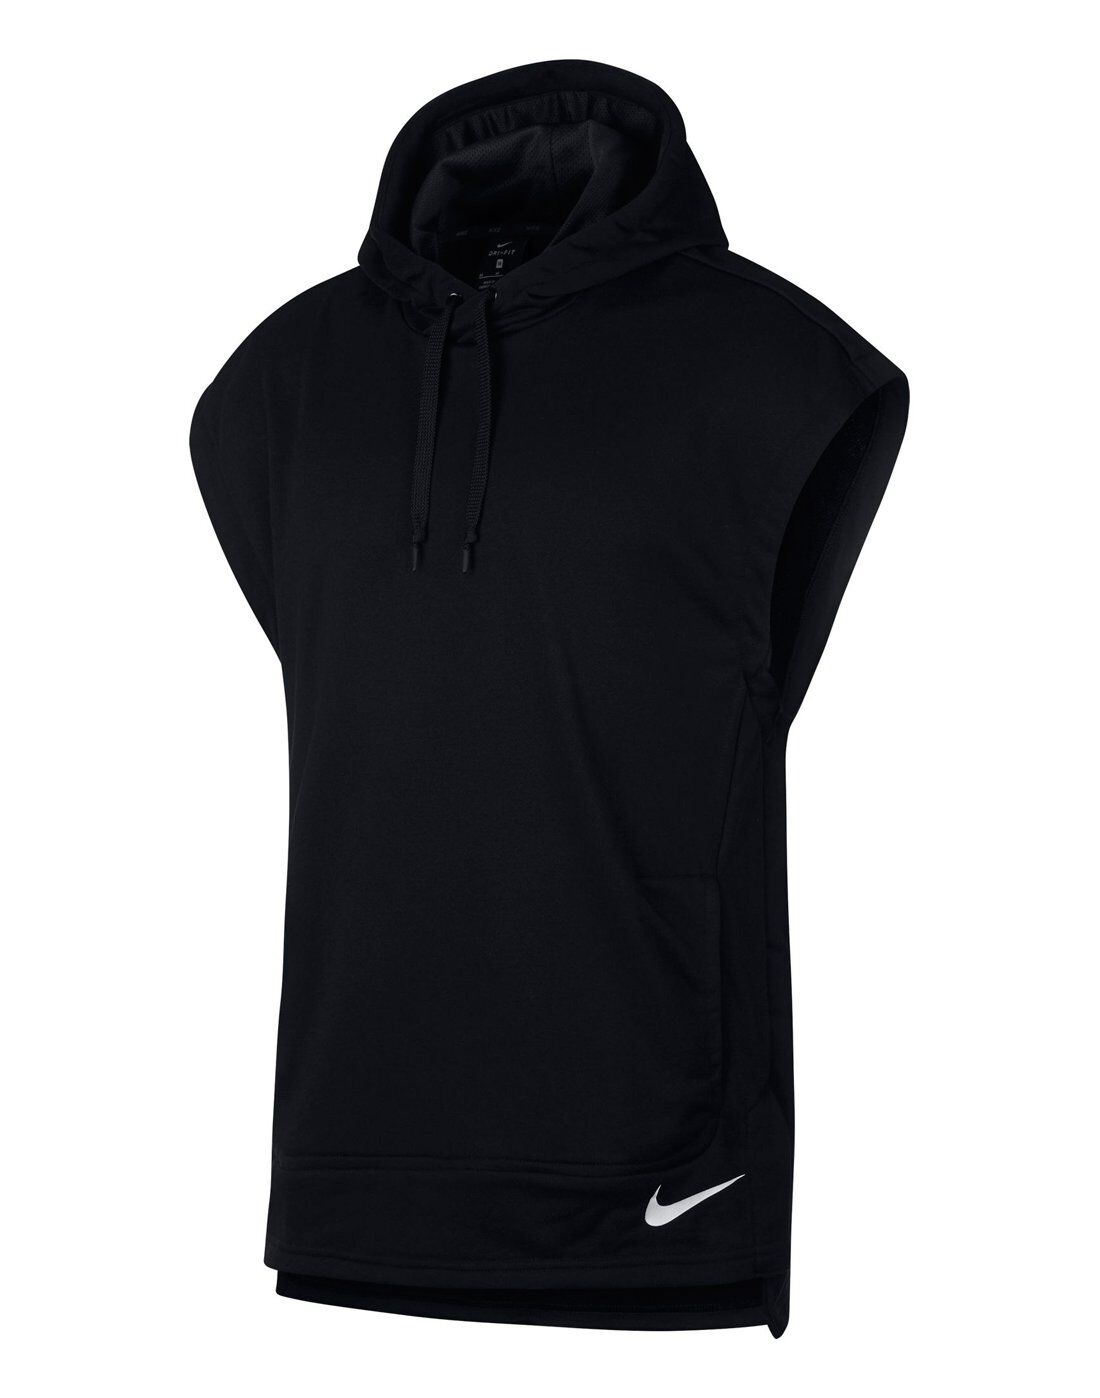 black nike sleeveless hoodie